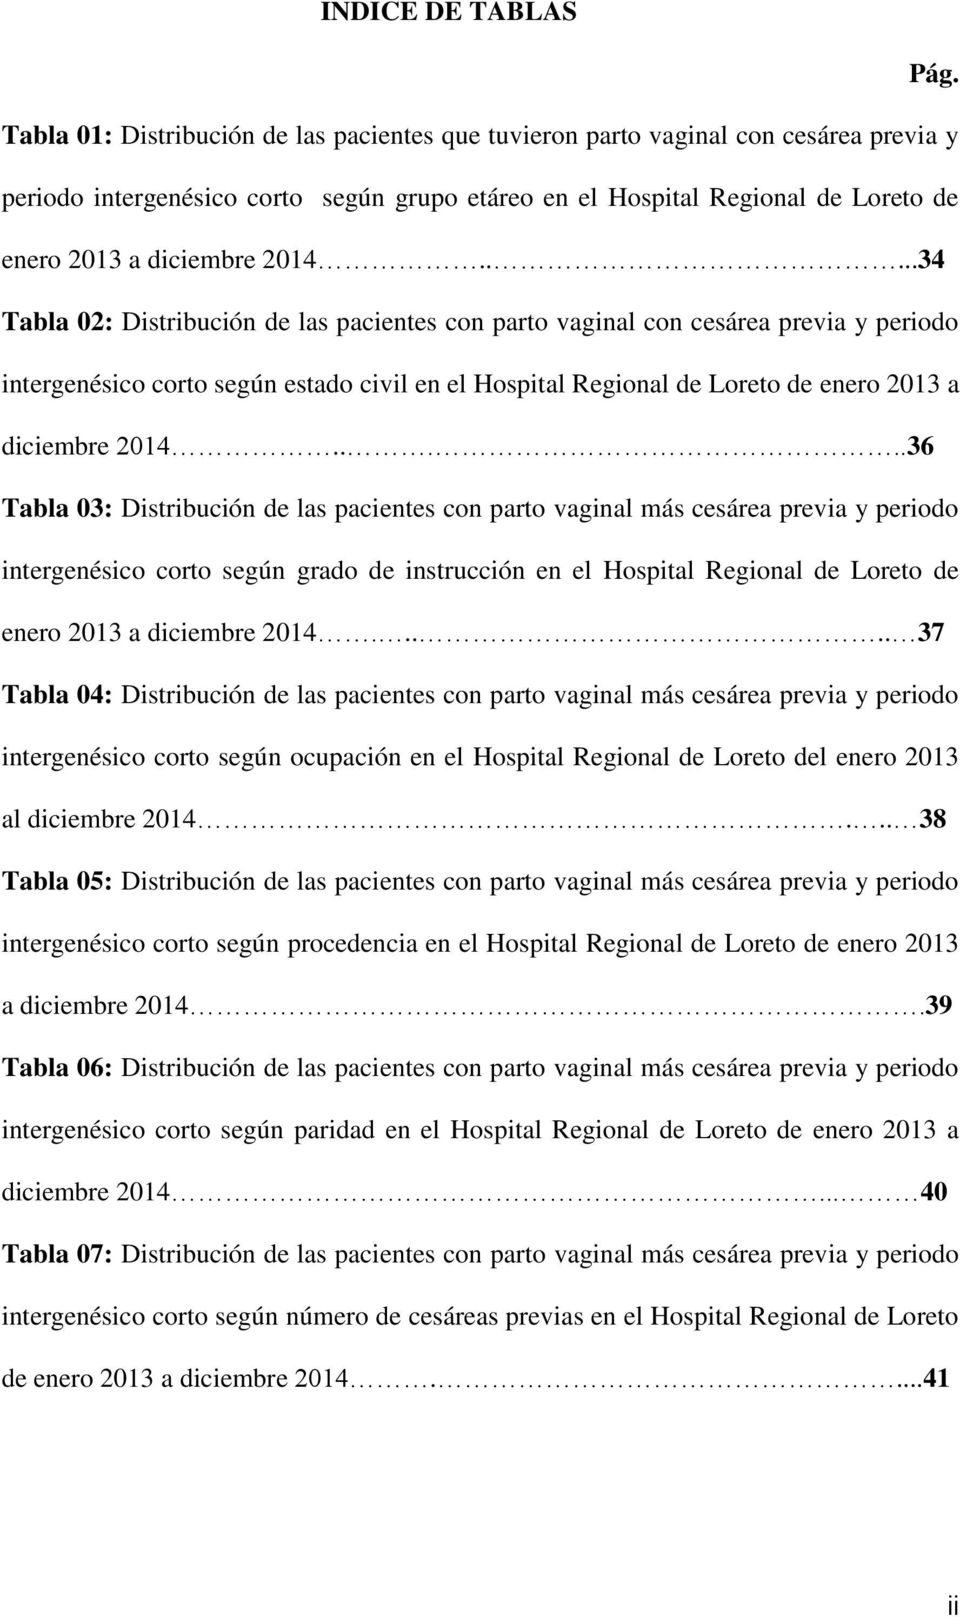 ....34 Tabla 02: Distribución de las pacientes con parto vaginal con cesárea previa y periodo intergenésico corto según estado civil en el Hospital Regional de Loreto de enero 2013 a diciembre 2014.